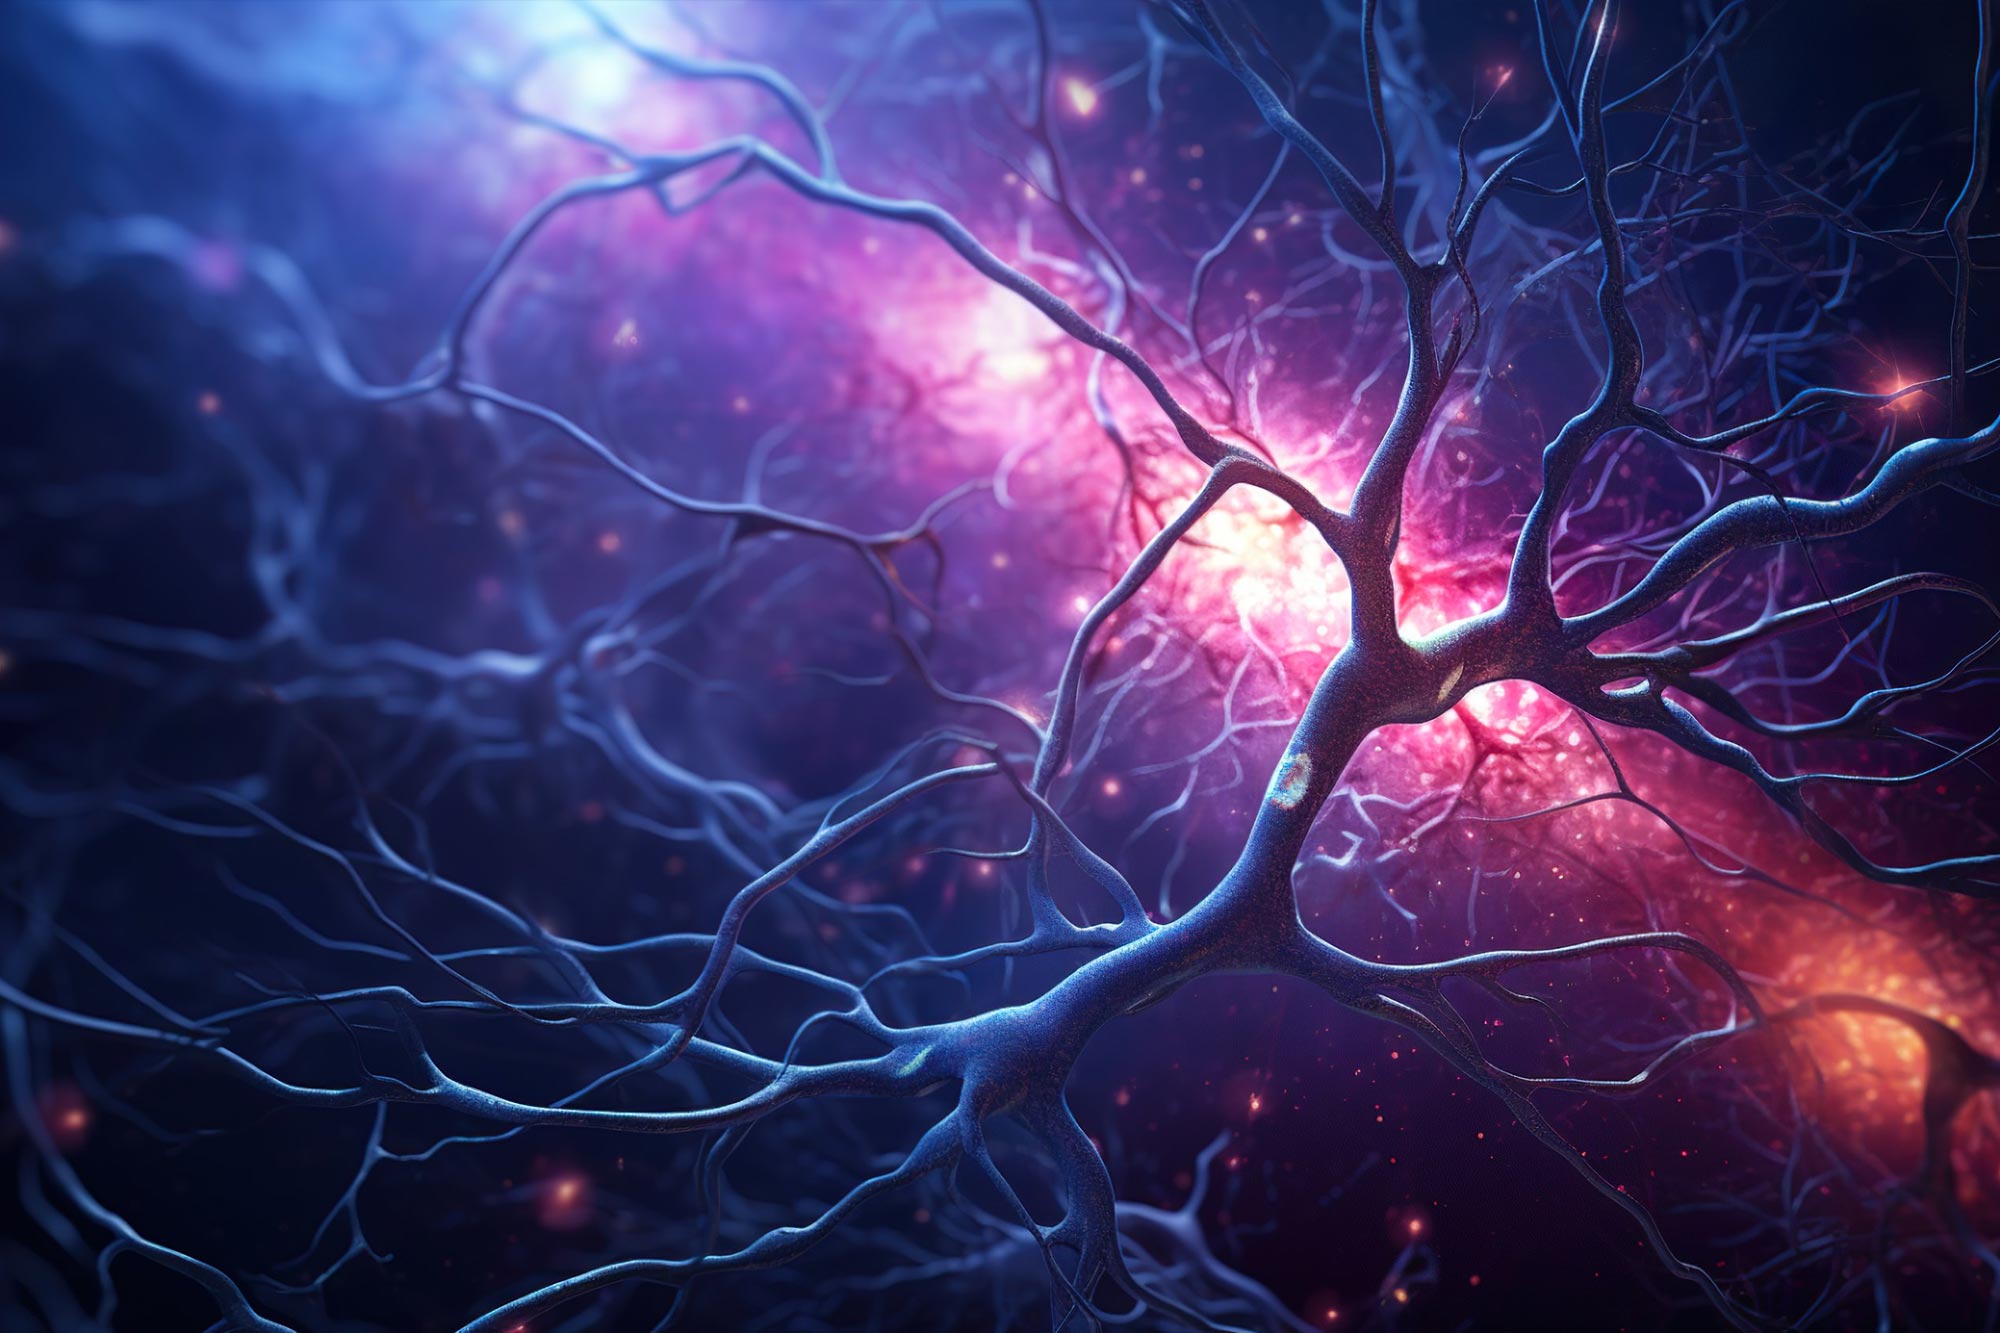 Komponen vital dari protein yang penting untuk integritas struktural neuron – tanpa putusnya akson, sinapsis akan mati